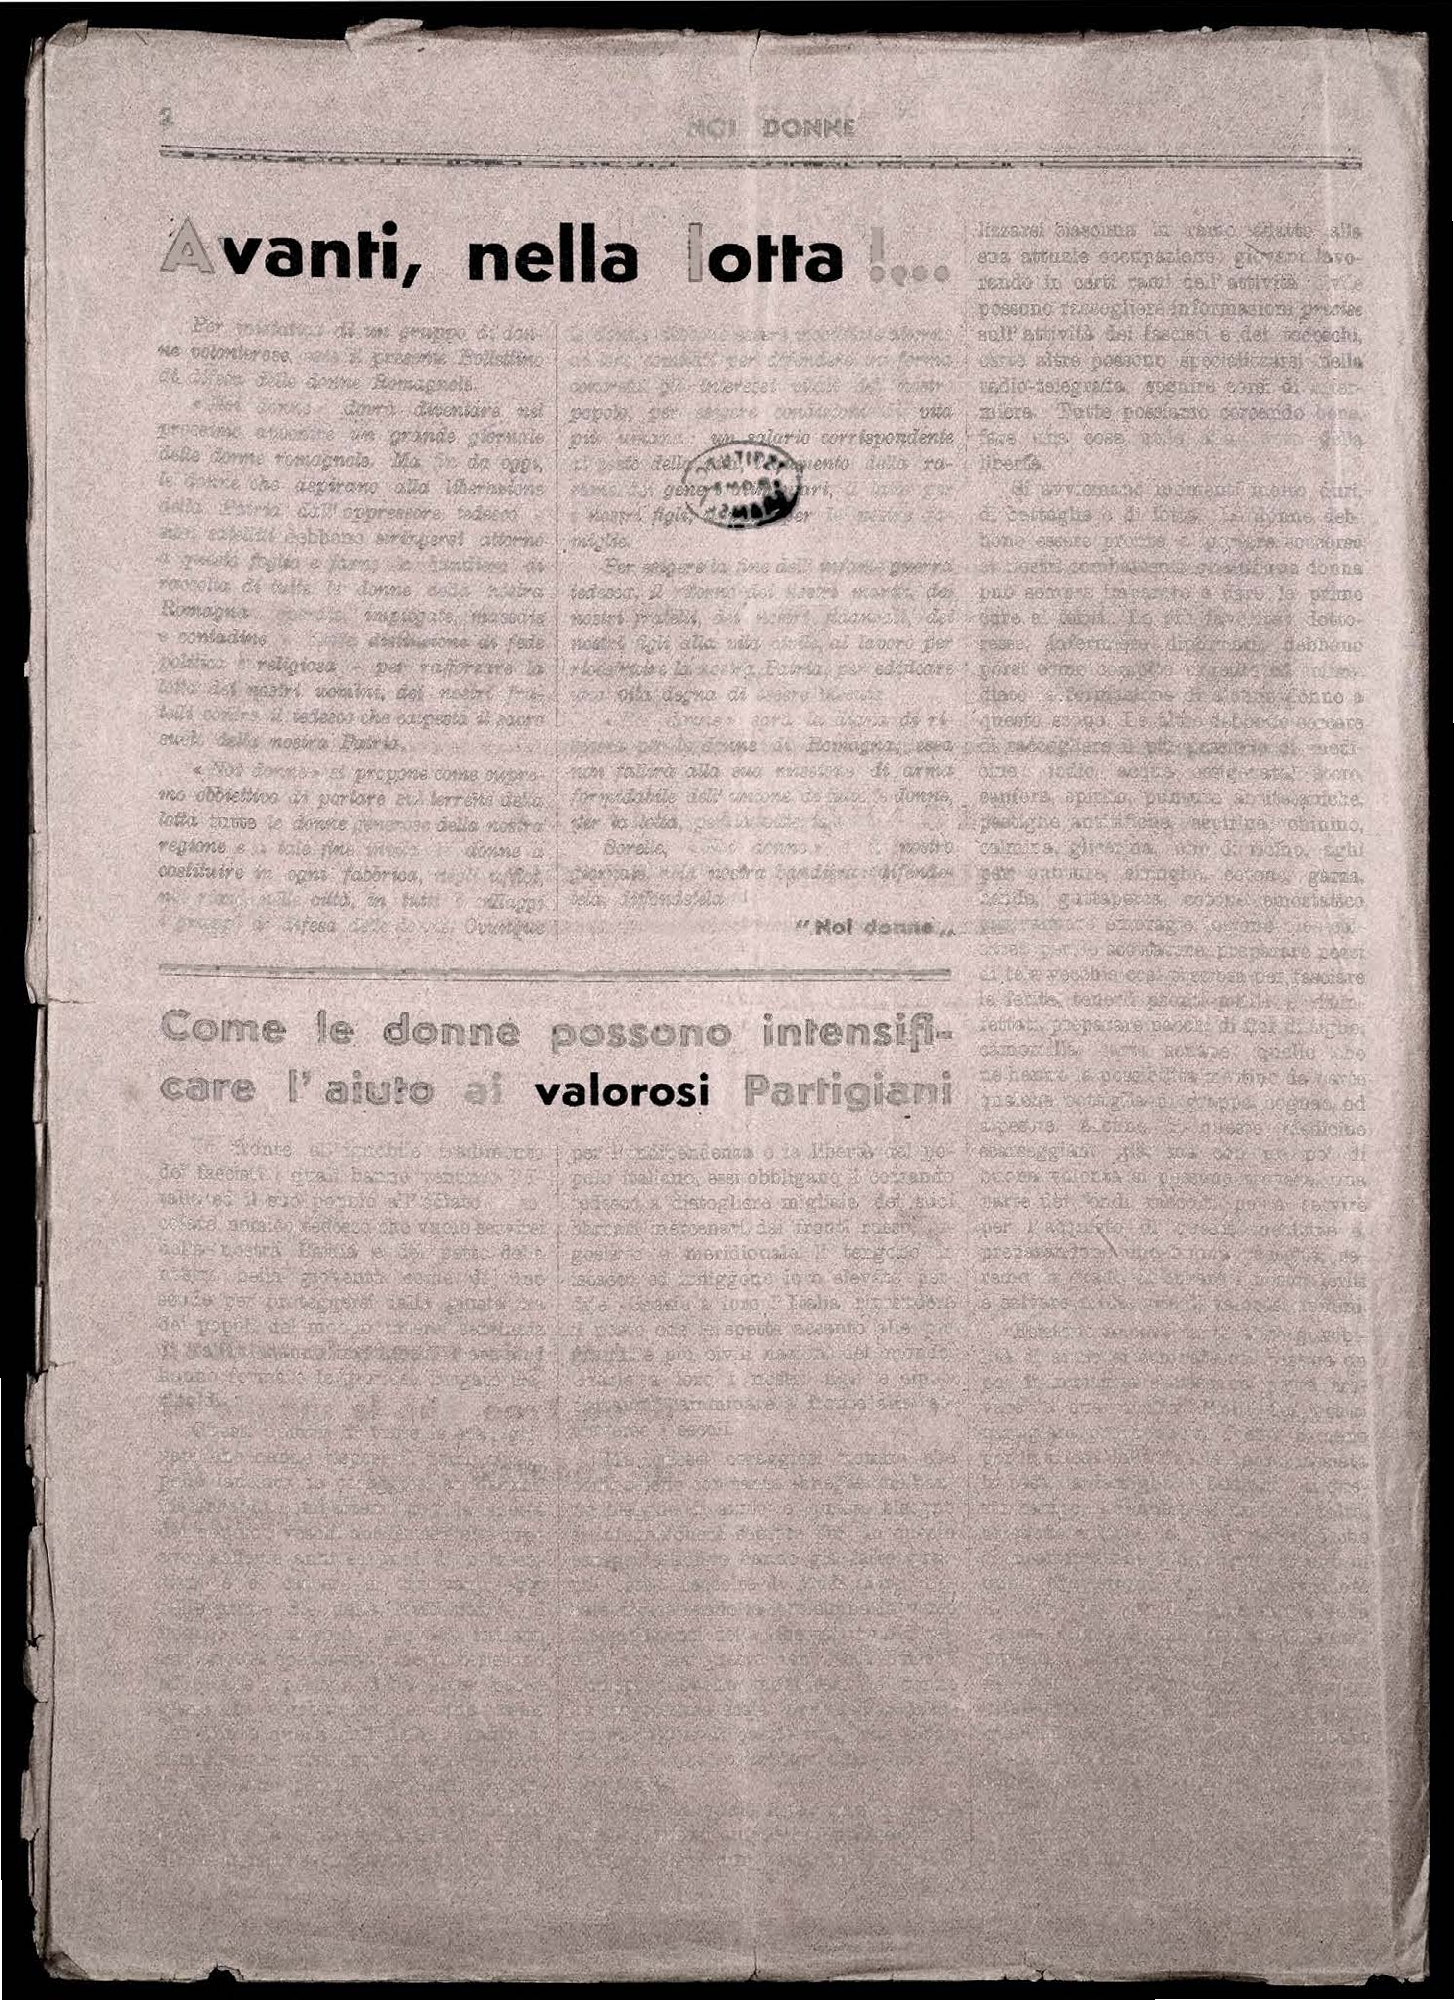 Foto: Numeri clandestini 1944 1945, raccolta